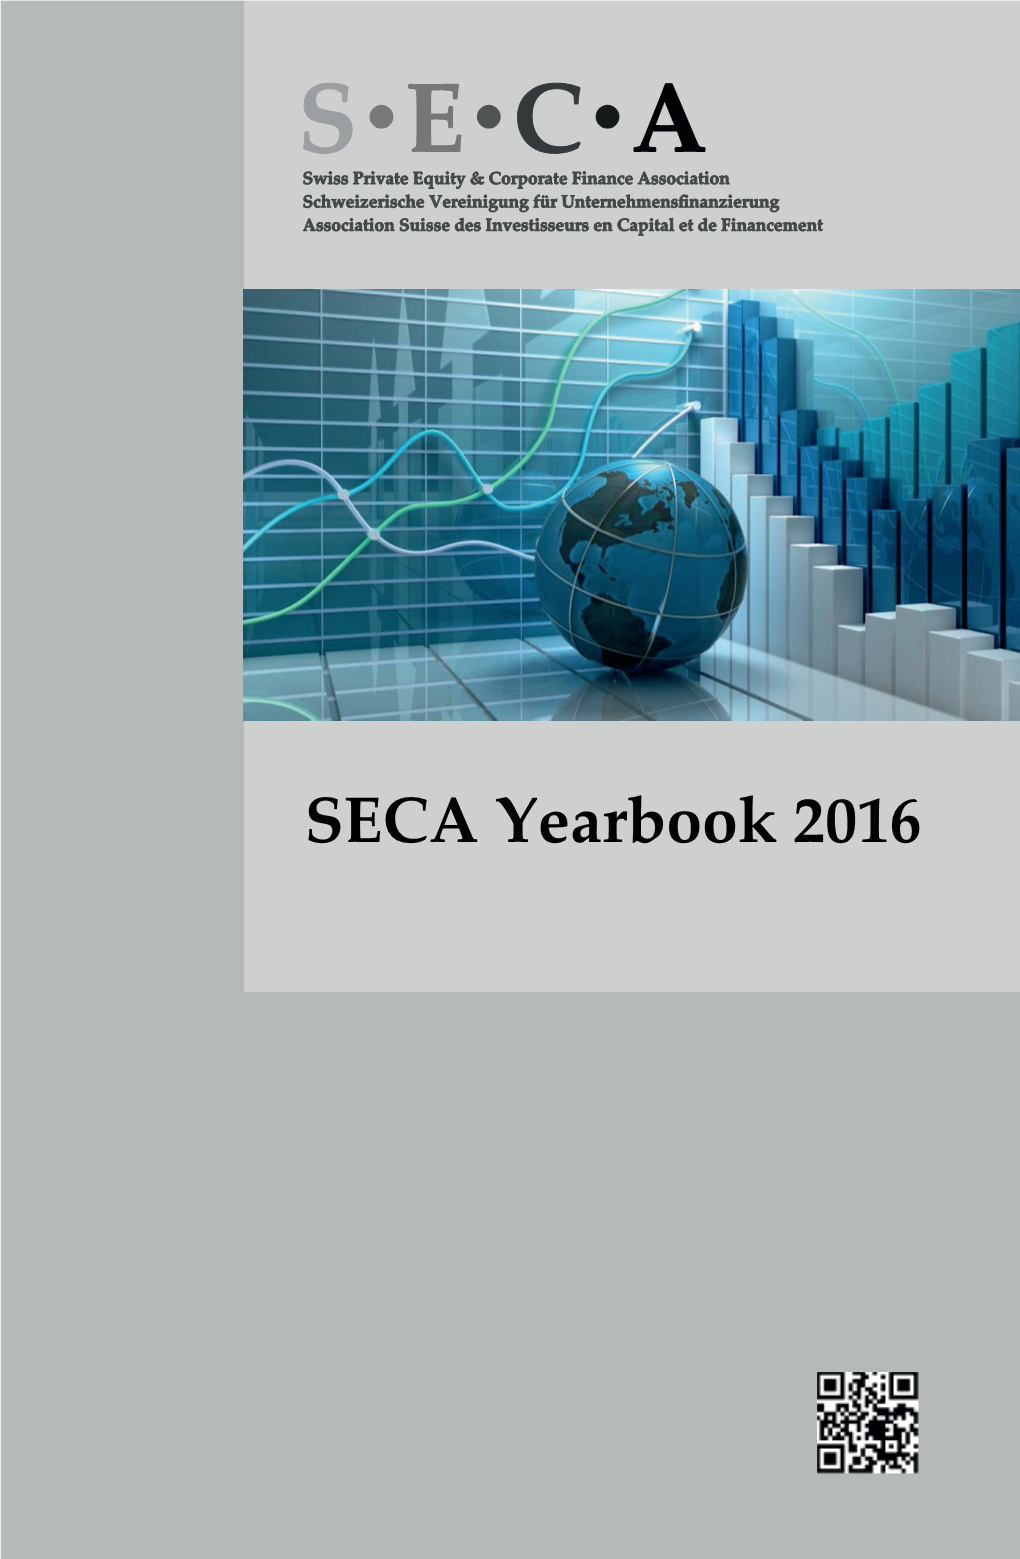 SECA Yearbook 2016 Secayearbook 201 6